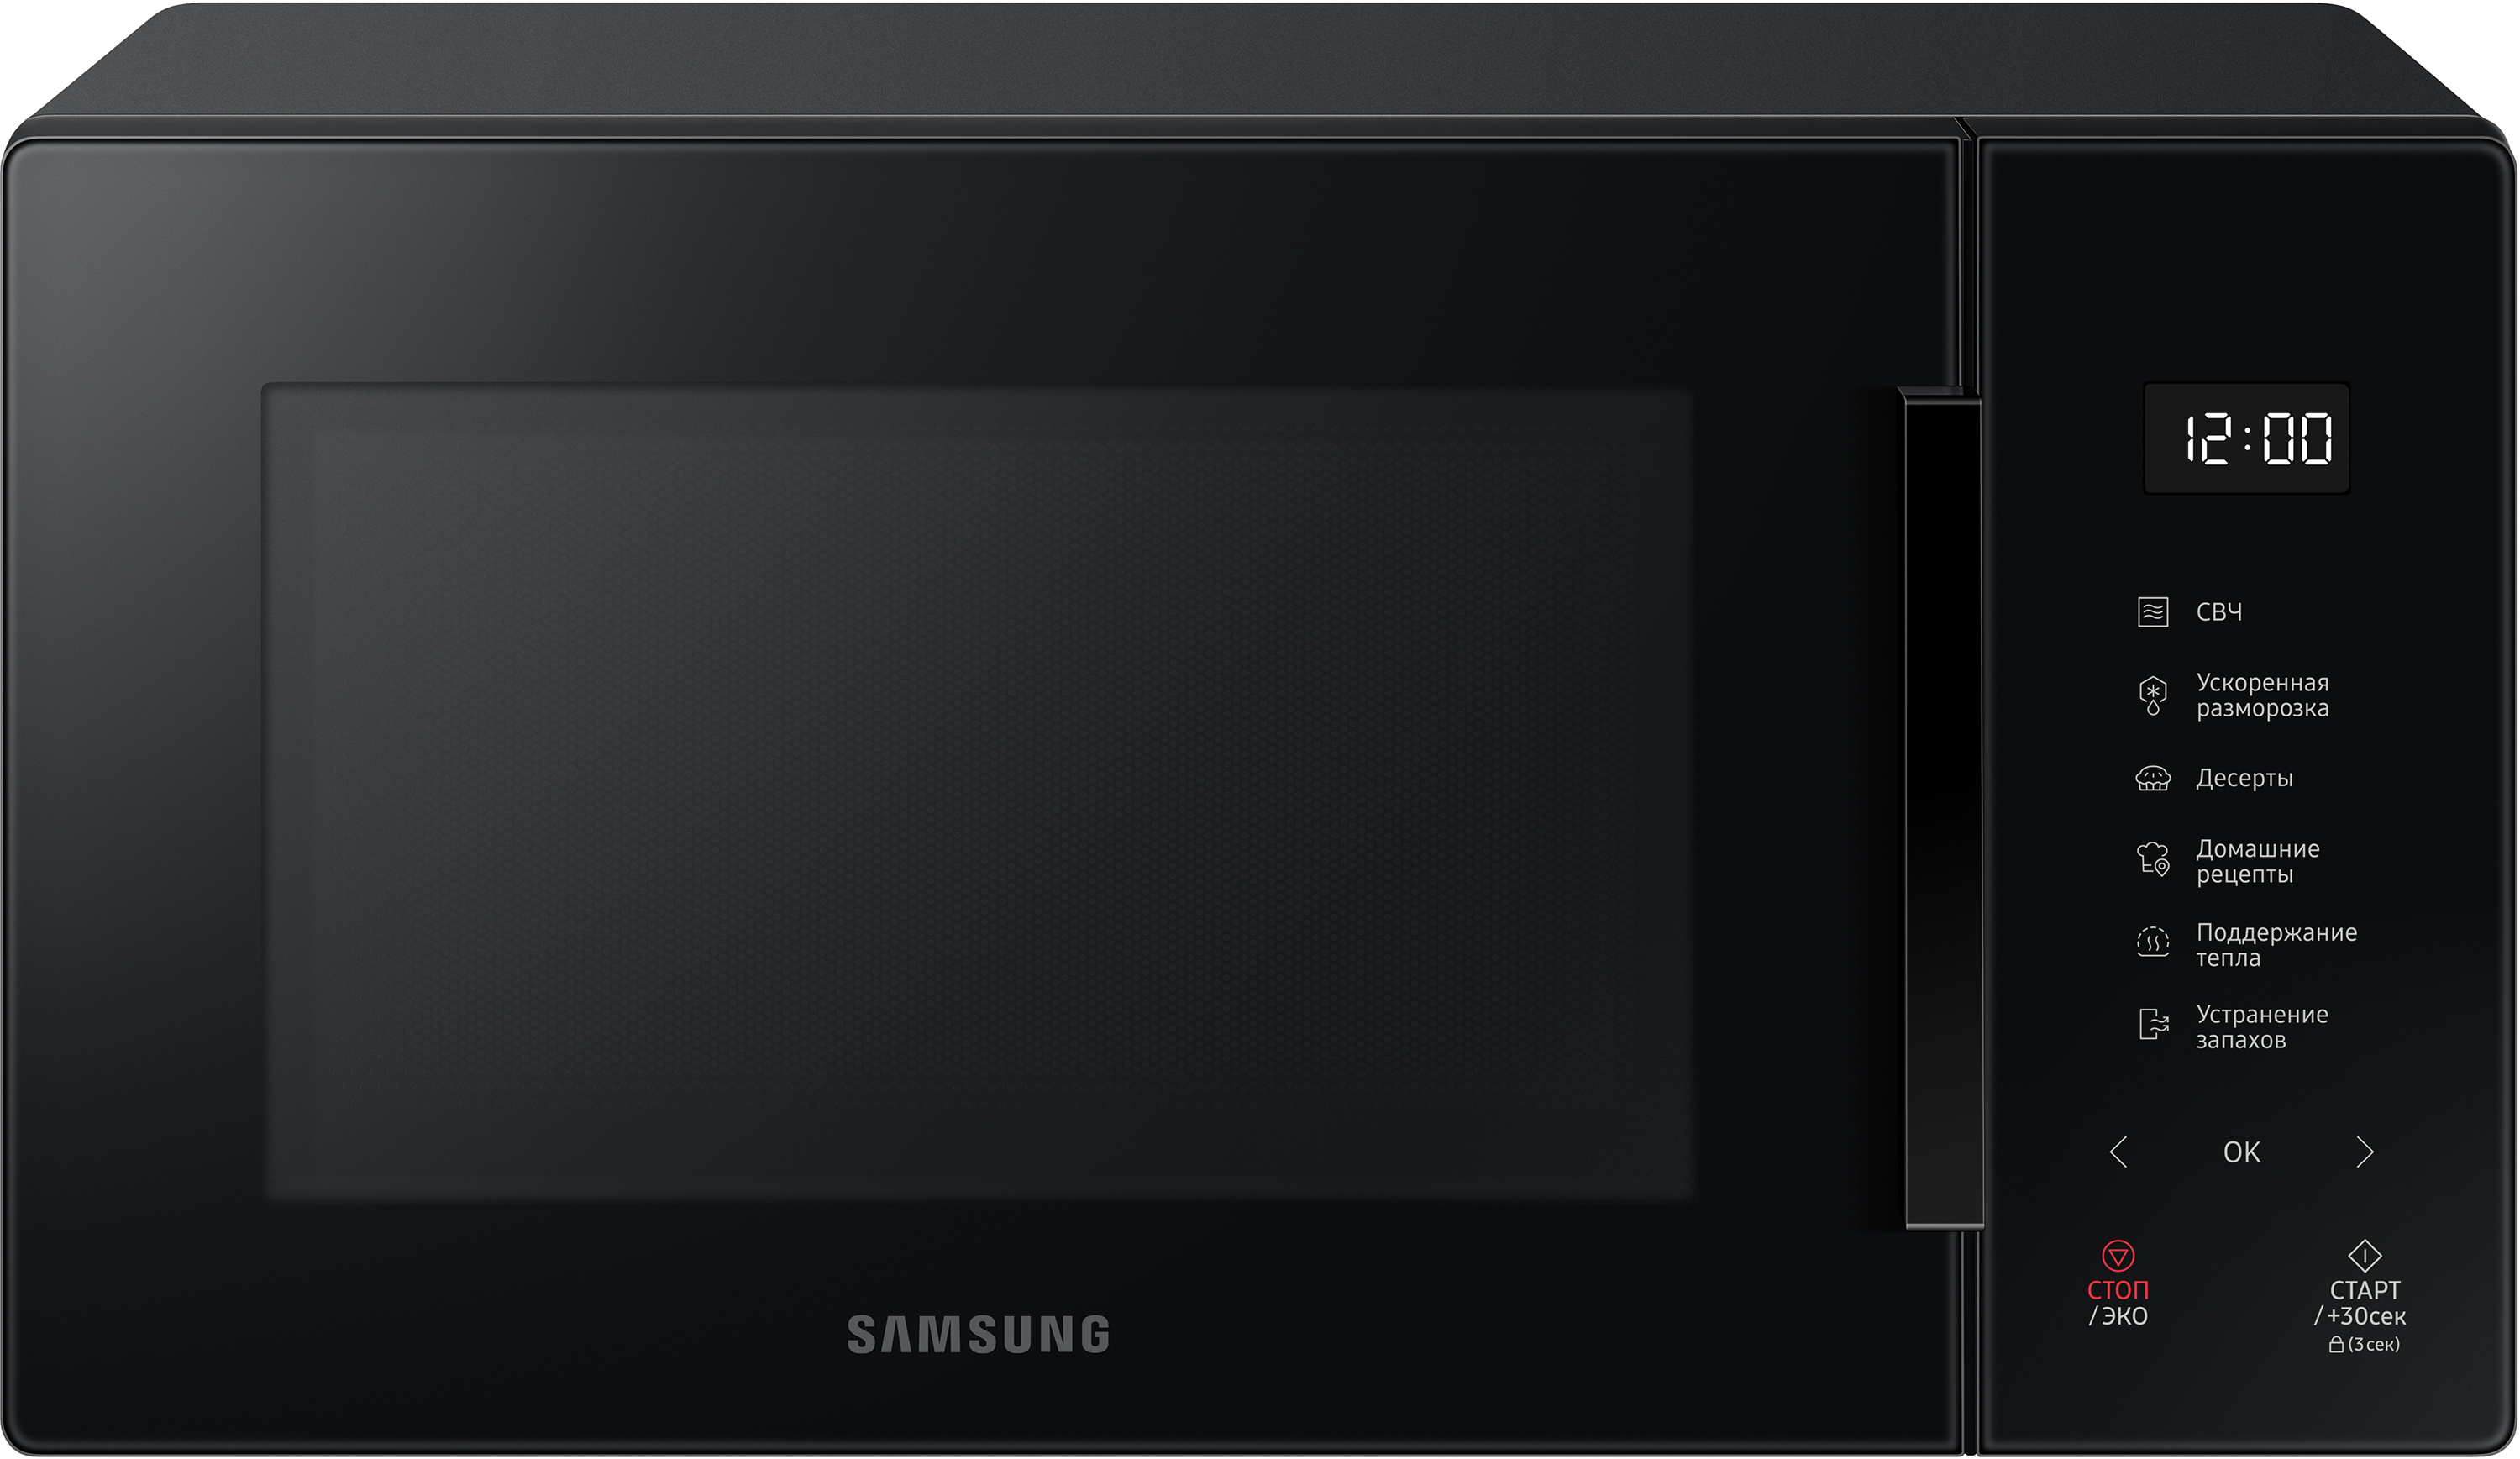 Samsung ms23a7118ak. Микроволновая печь Samsung me88sub/BW. Микроволновая печь Samsung me88sub/BW черный. Микроволновая печь Соло Samsung me88sub Black. Микроволновая печь Samsung ge88sub BW черный.